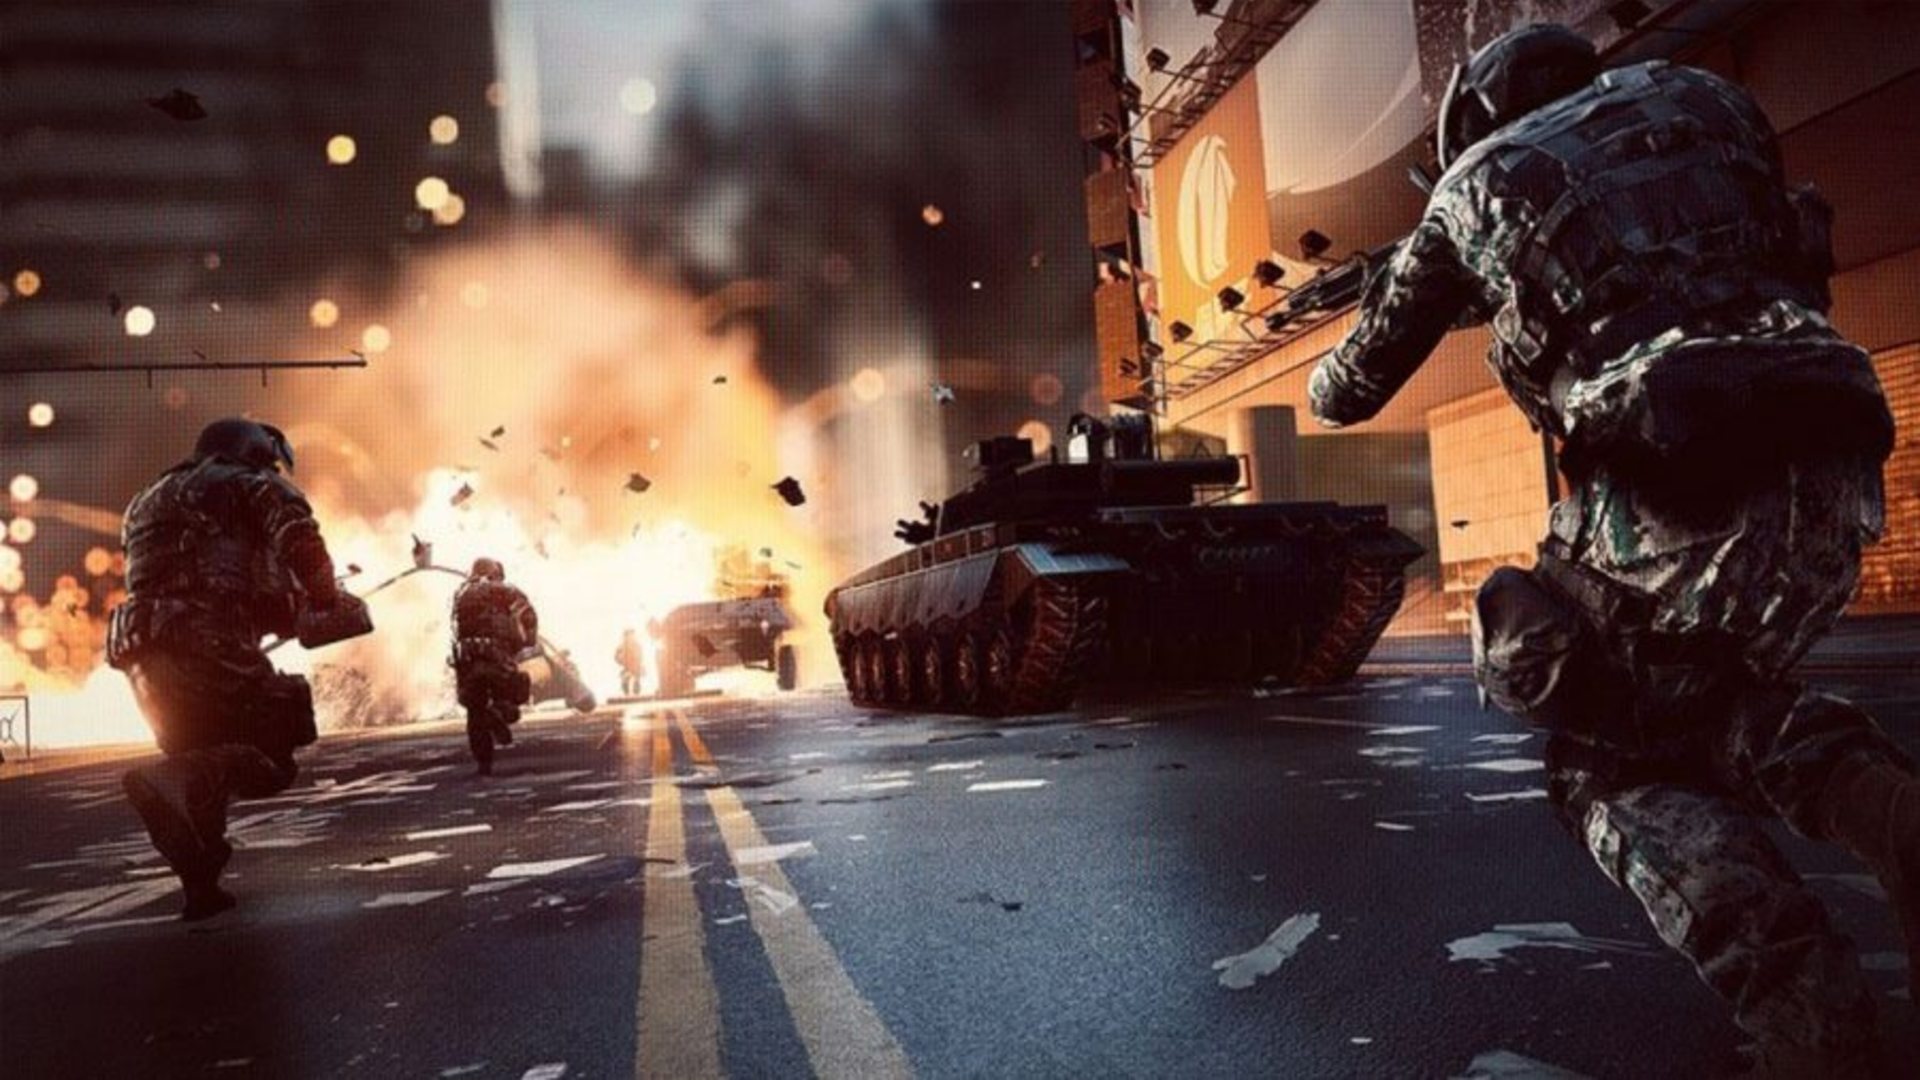 أفضل ألعاب الدبابات: Battlefield 2042. يظهر الصورة الجنود والدبابات في شوارع المدينة. أيضا هناك انفجار